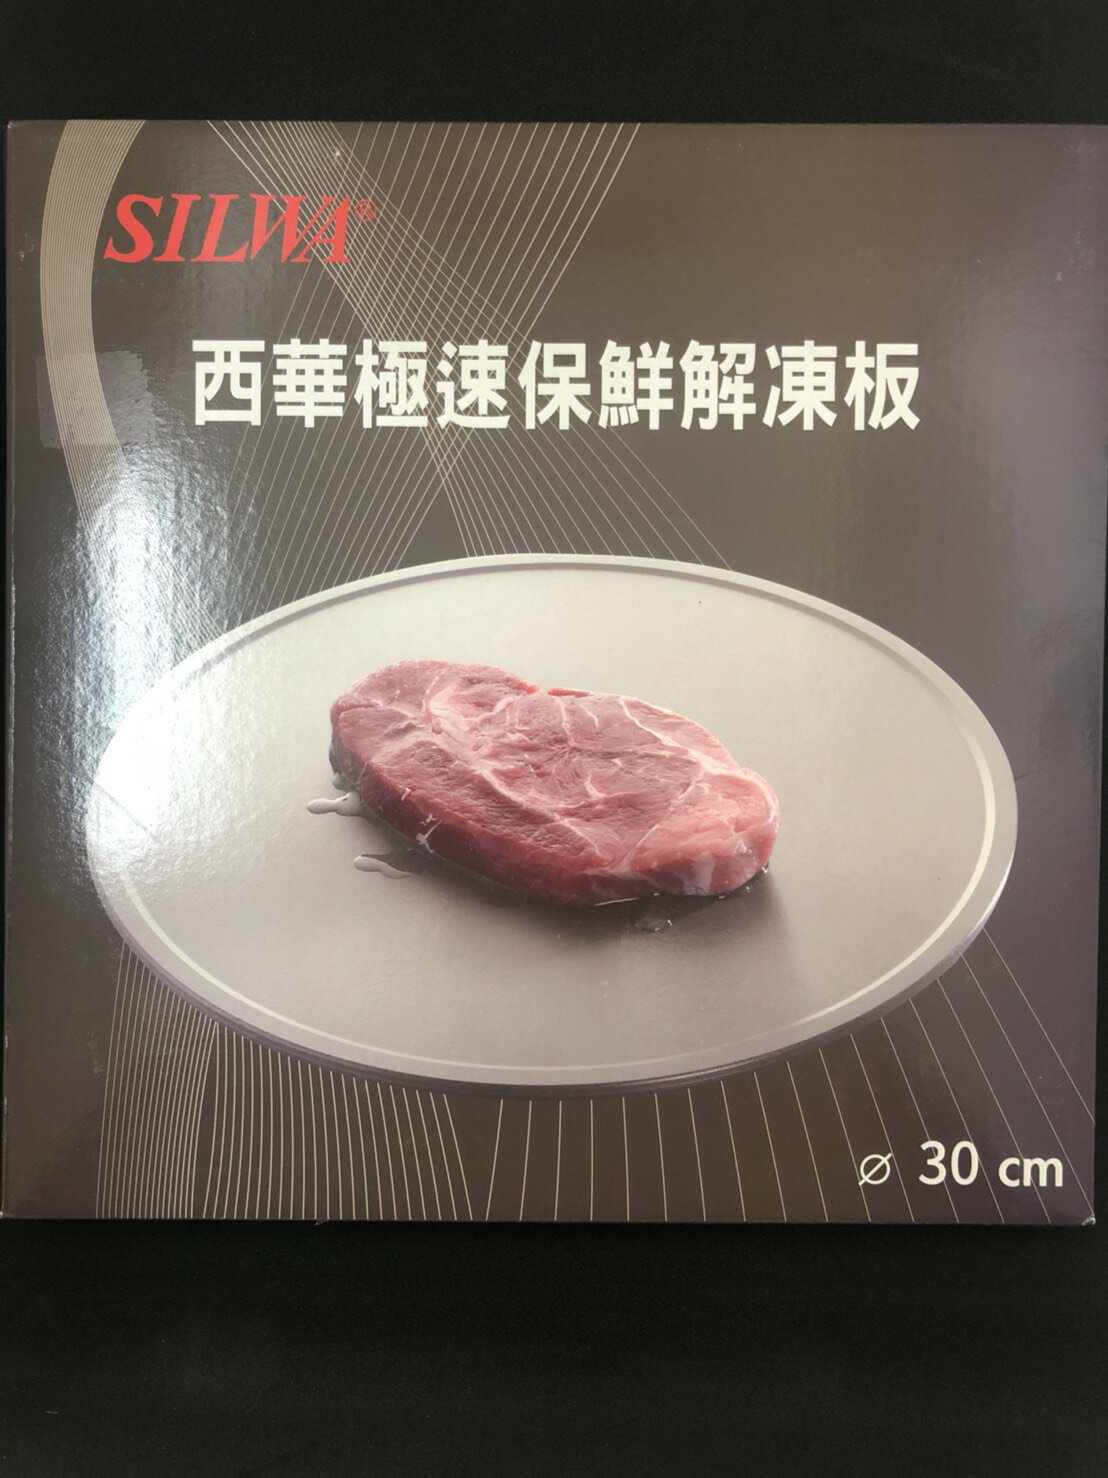 易集GO商城 (林口店) 西華Silwa 節能冰霸極速解凍+燒烤兩用盤 30cm-248612505